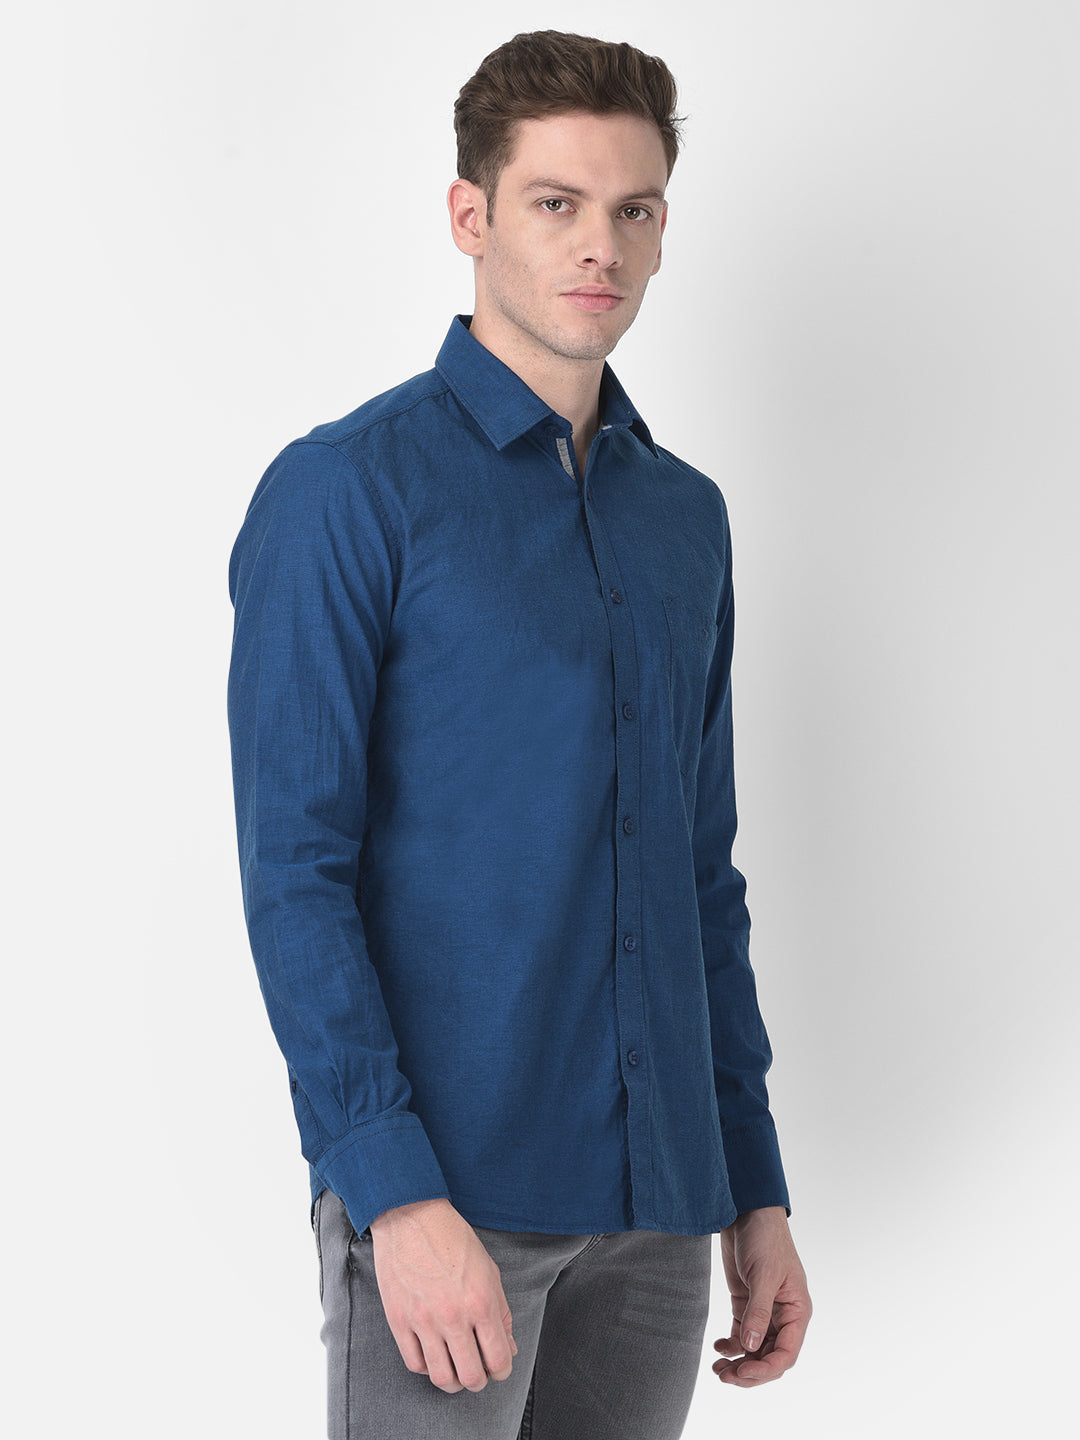 Blue Textured Shirt-Men Shirts-Crimsoune Club